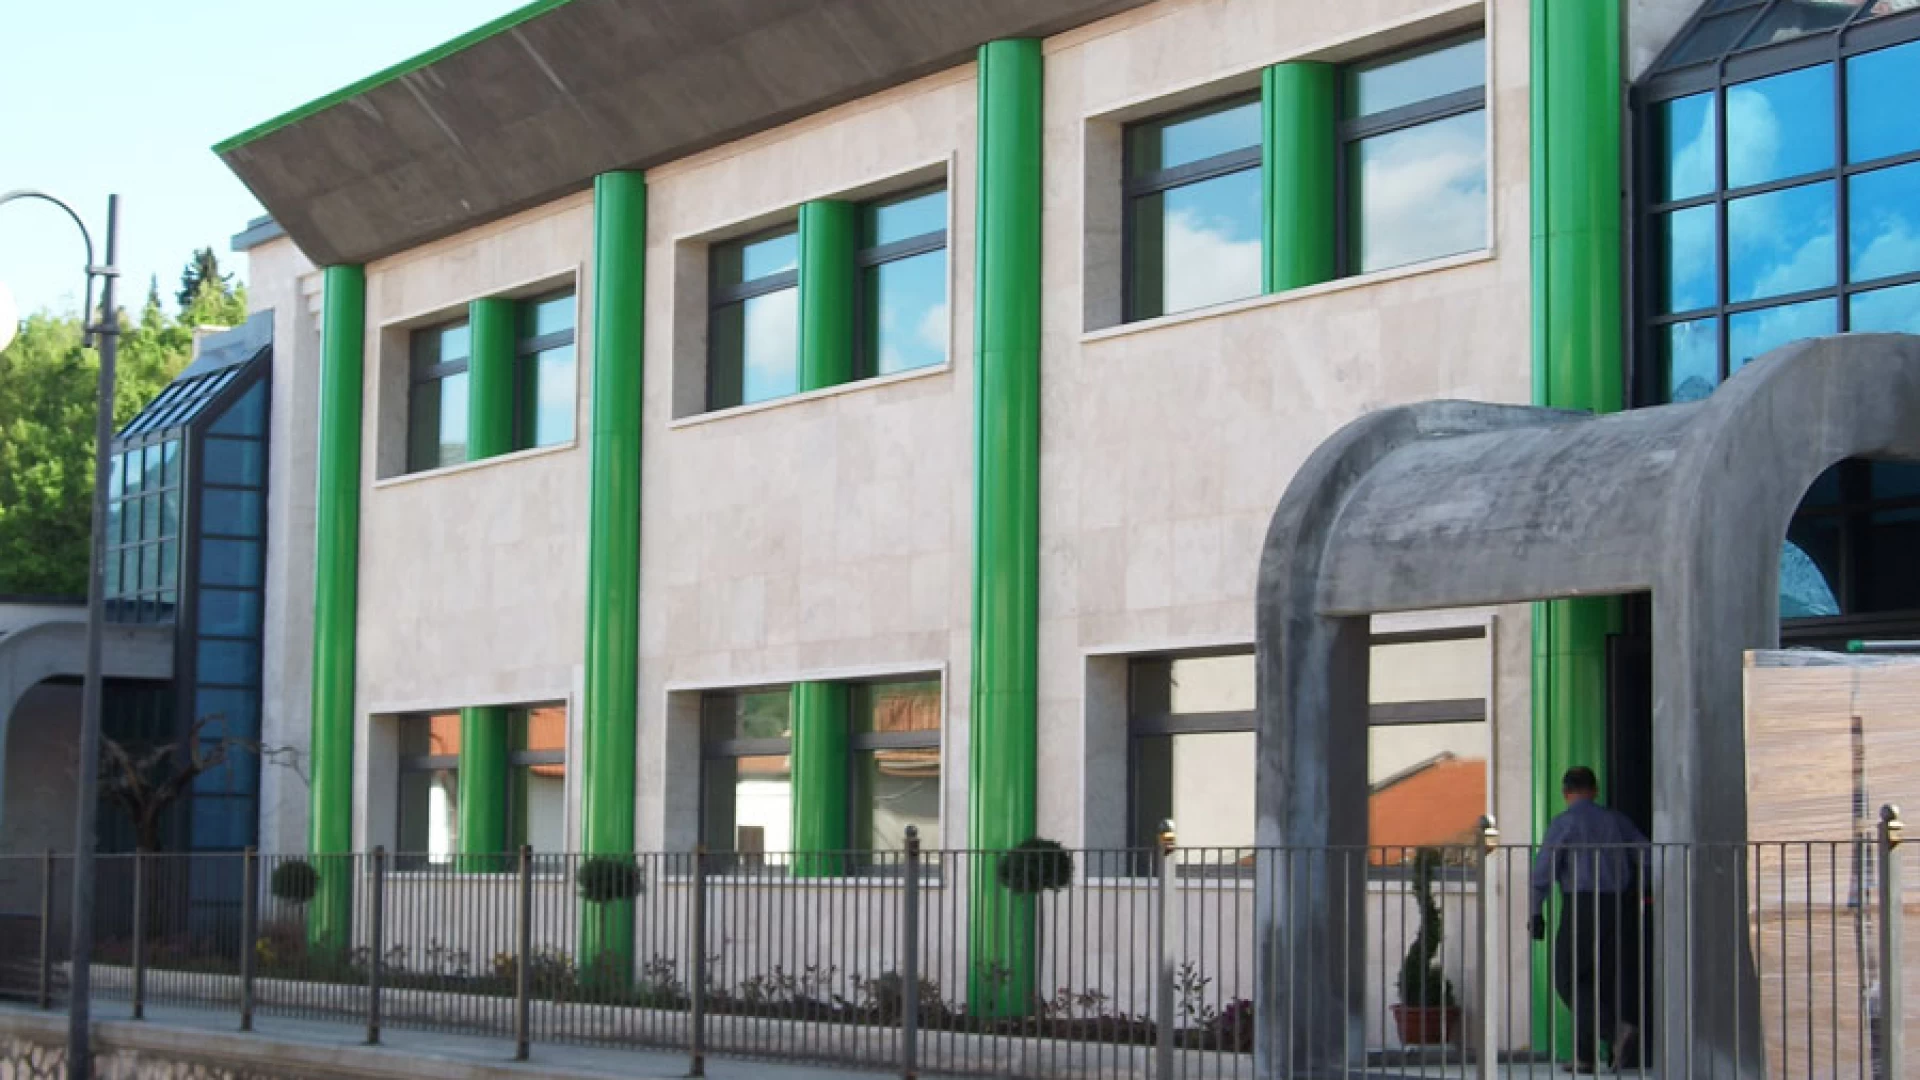 Colli a Volturno: il sindaco Incollingo chiude la scuola sabato 24 ottobre per una sanificazione straordinaria programmata